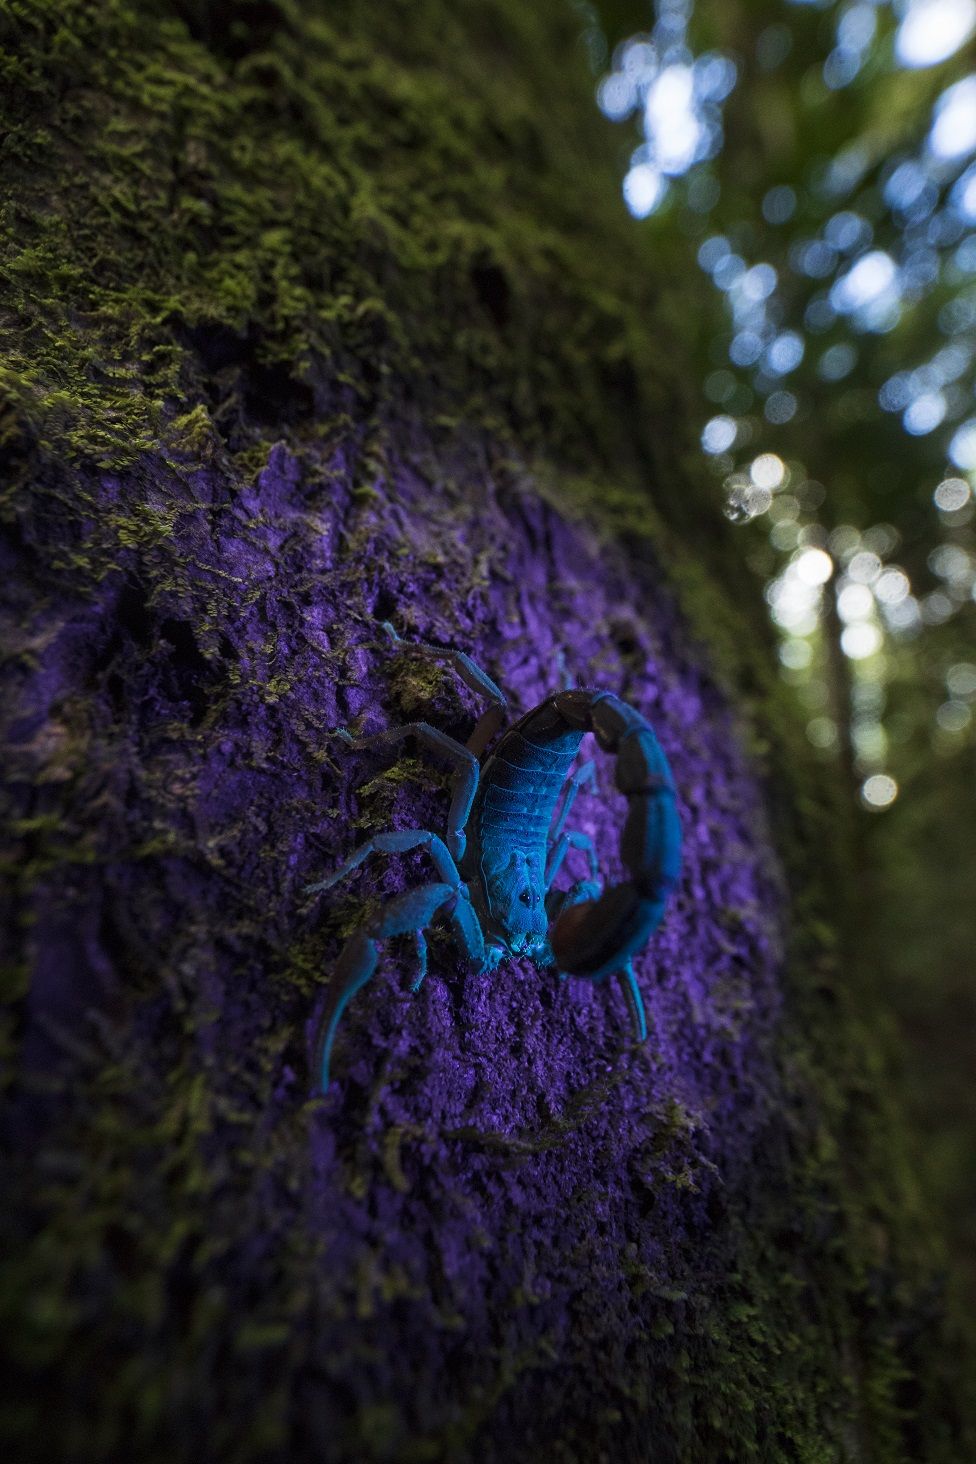 A scorpion under ultra-violet light